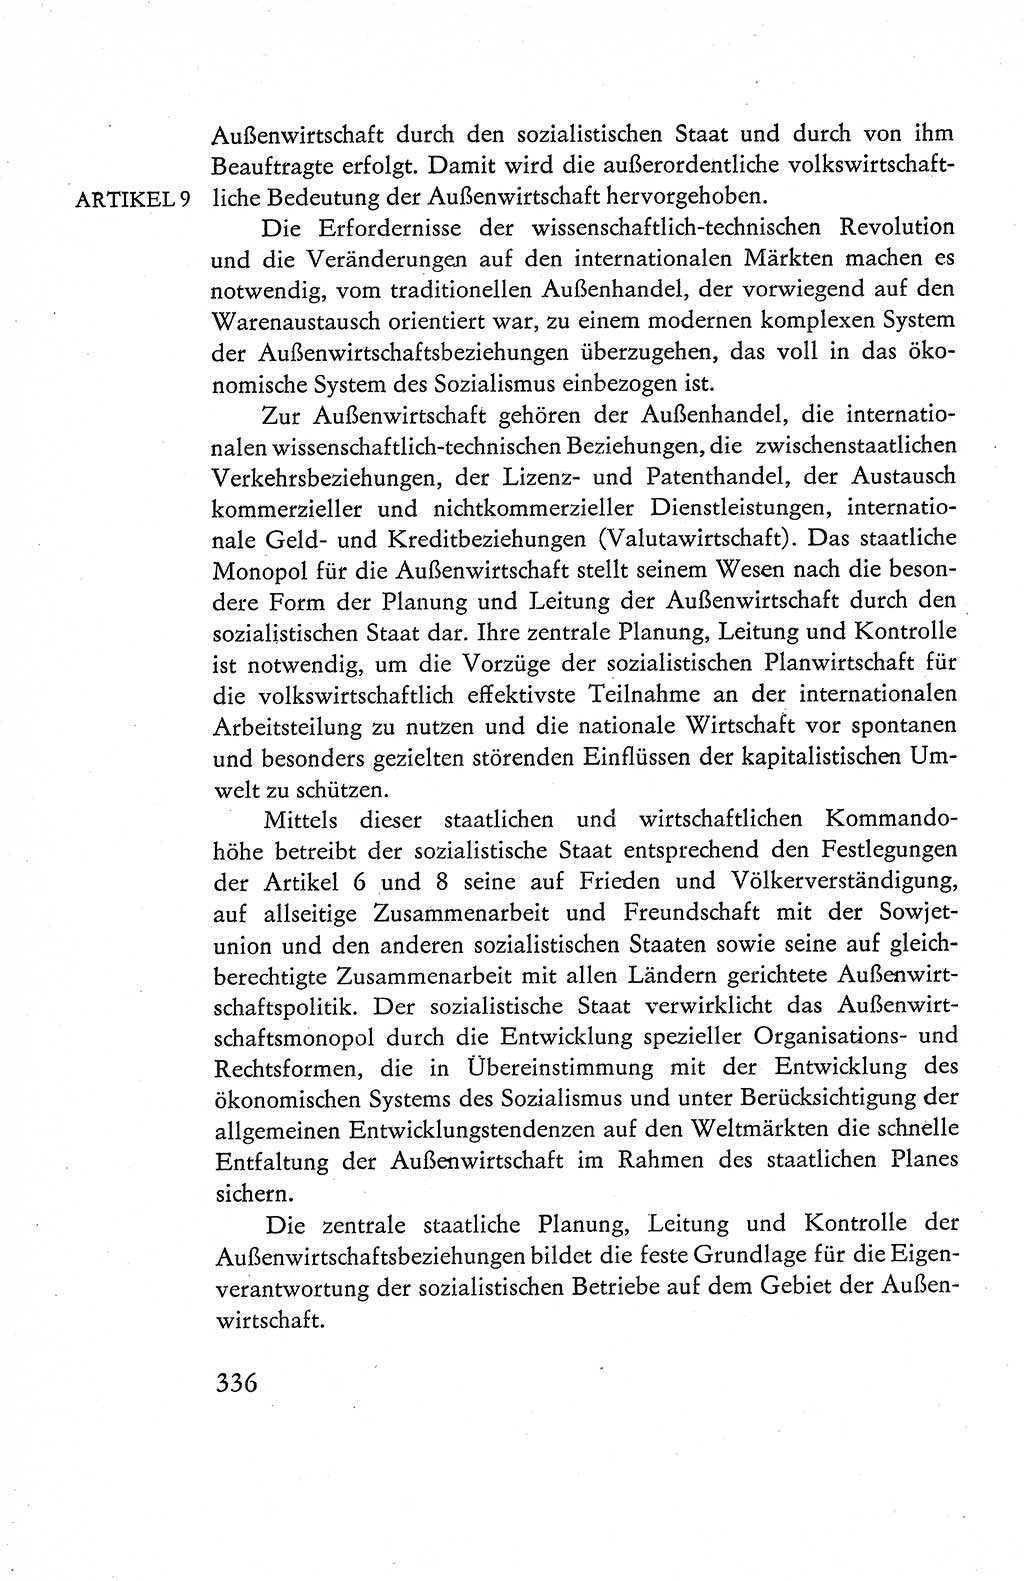 Verfassung der Deutschen Demokratischen Republik (DDR), Dokumente, Kommentar 1969, Band 1, Seite 336 (Verf. DDR Dok. Komm. 1969, Bd. 1, S. 336)